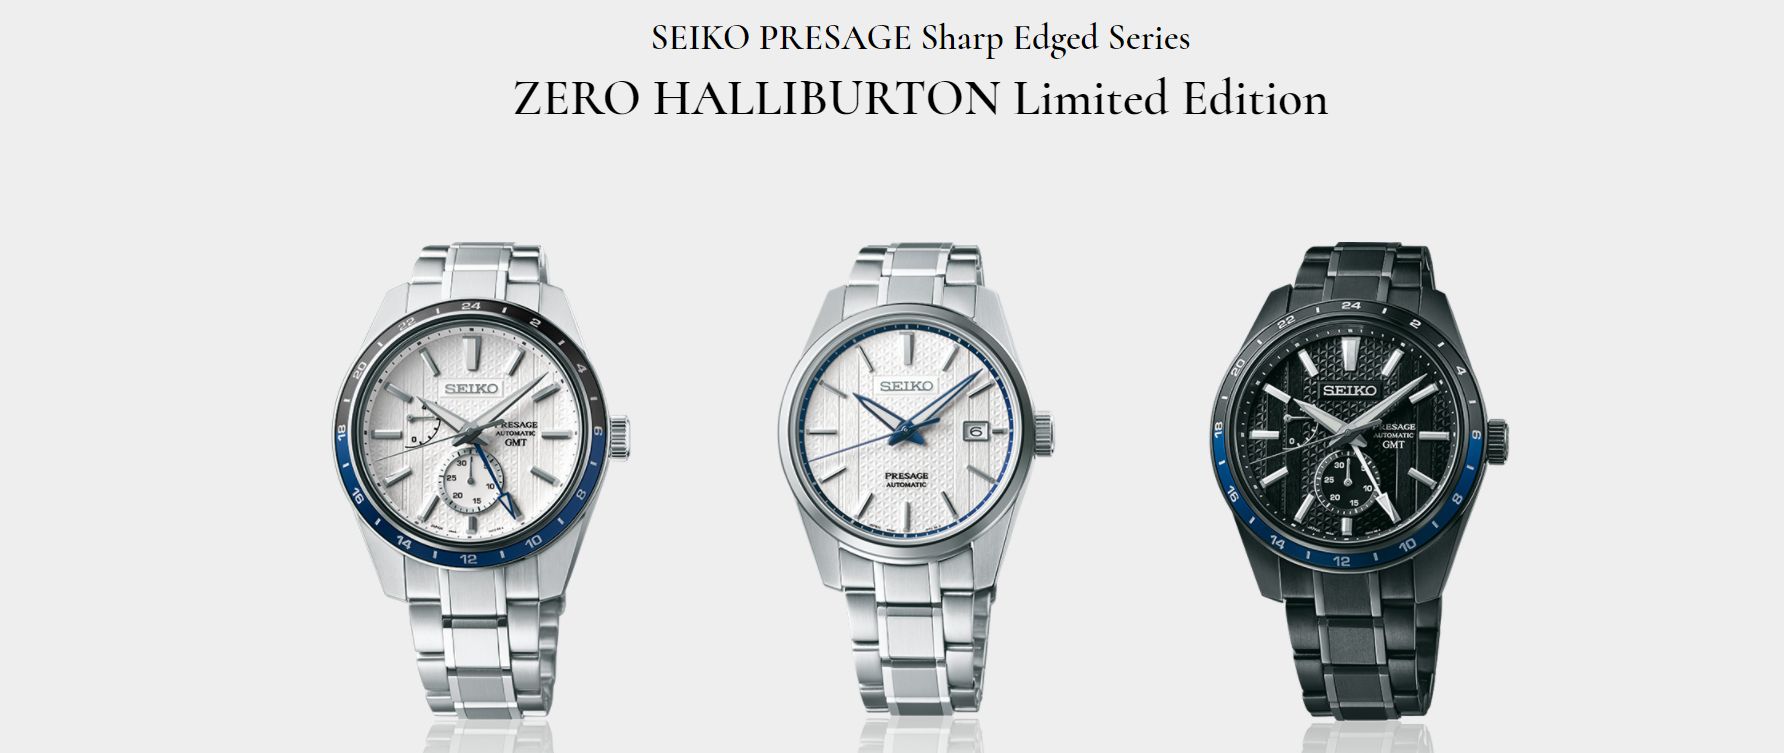 Seiko Presage Sharp Edged X Zero Halliburton